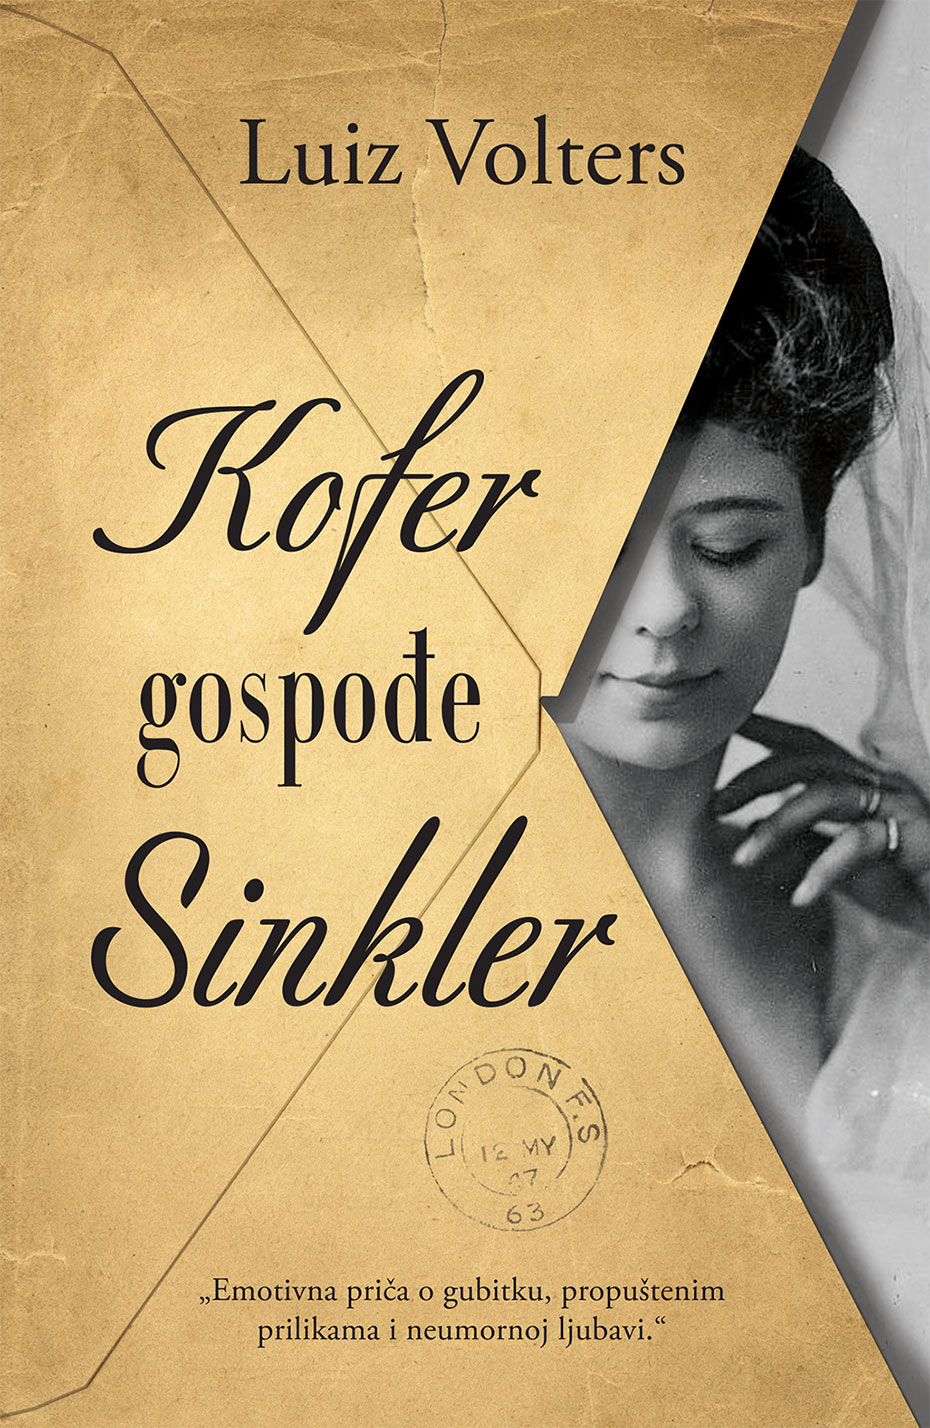 Knjiga-na-poklon-Kofer-gospodje-Sinkler-Luiz-Volters